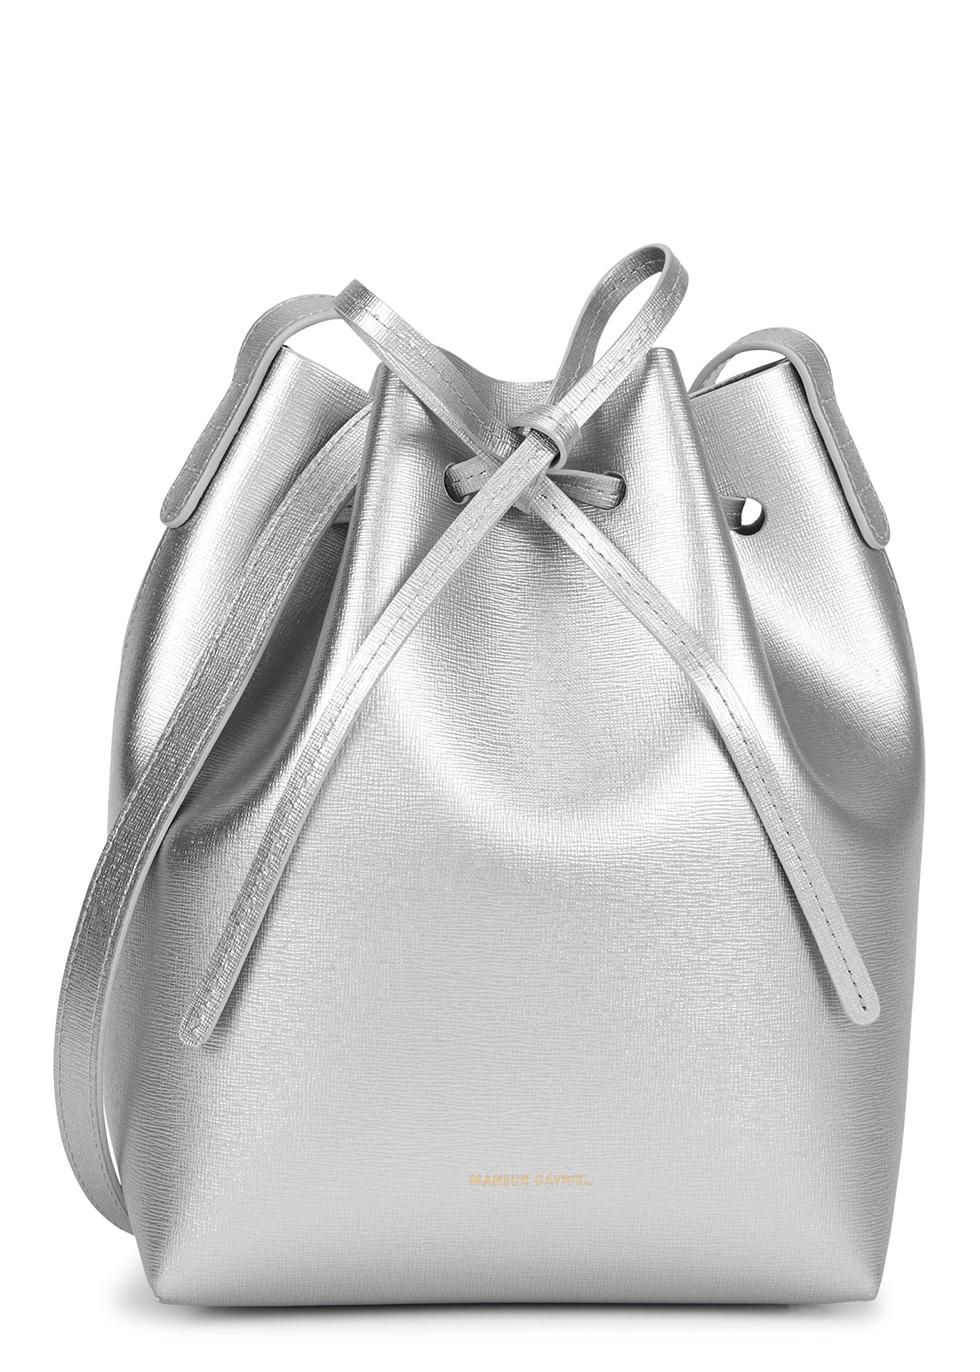 Mansur Gavriel Mini Metallic Leather Bucket Bag in Gray | Lyst